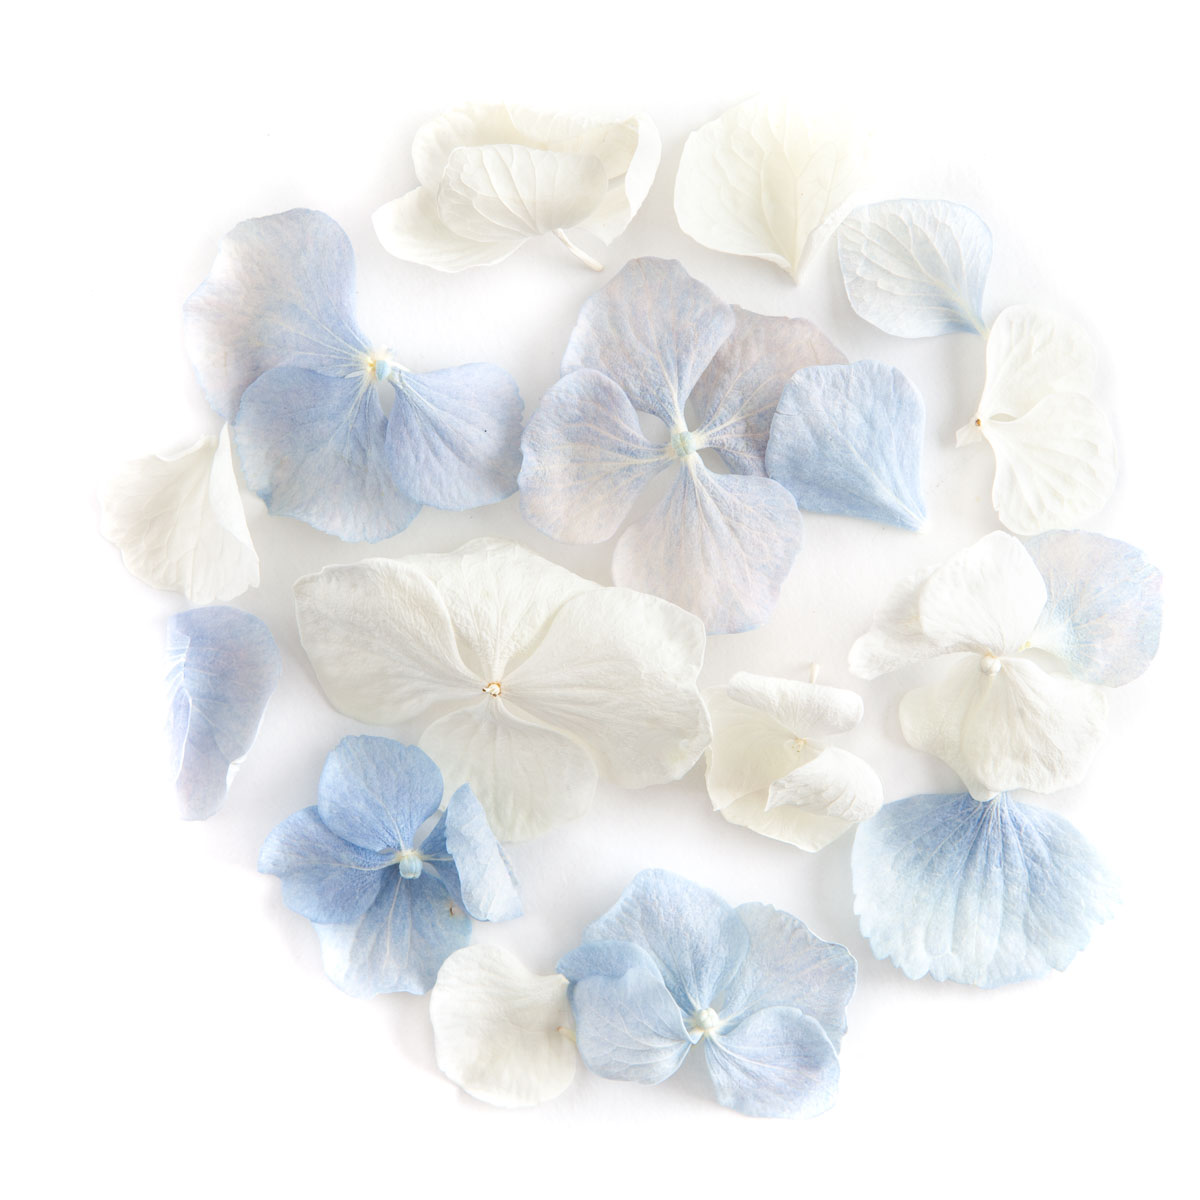 White & Blue Hydrangea confetti petals - Biodegradable Confetti - Real Flower Petal Confetti